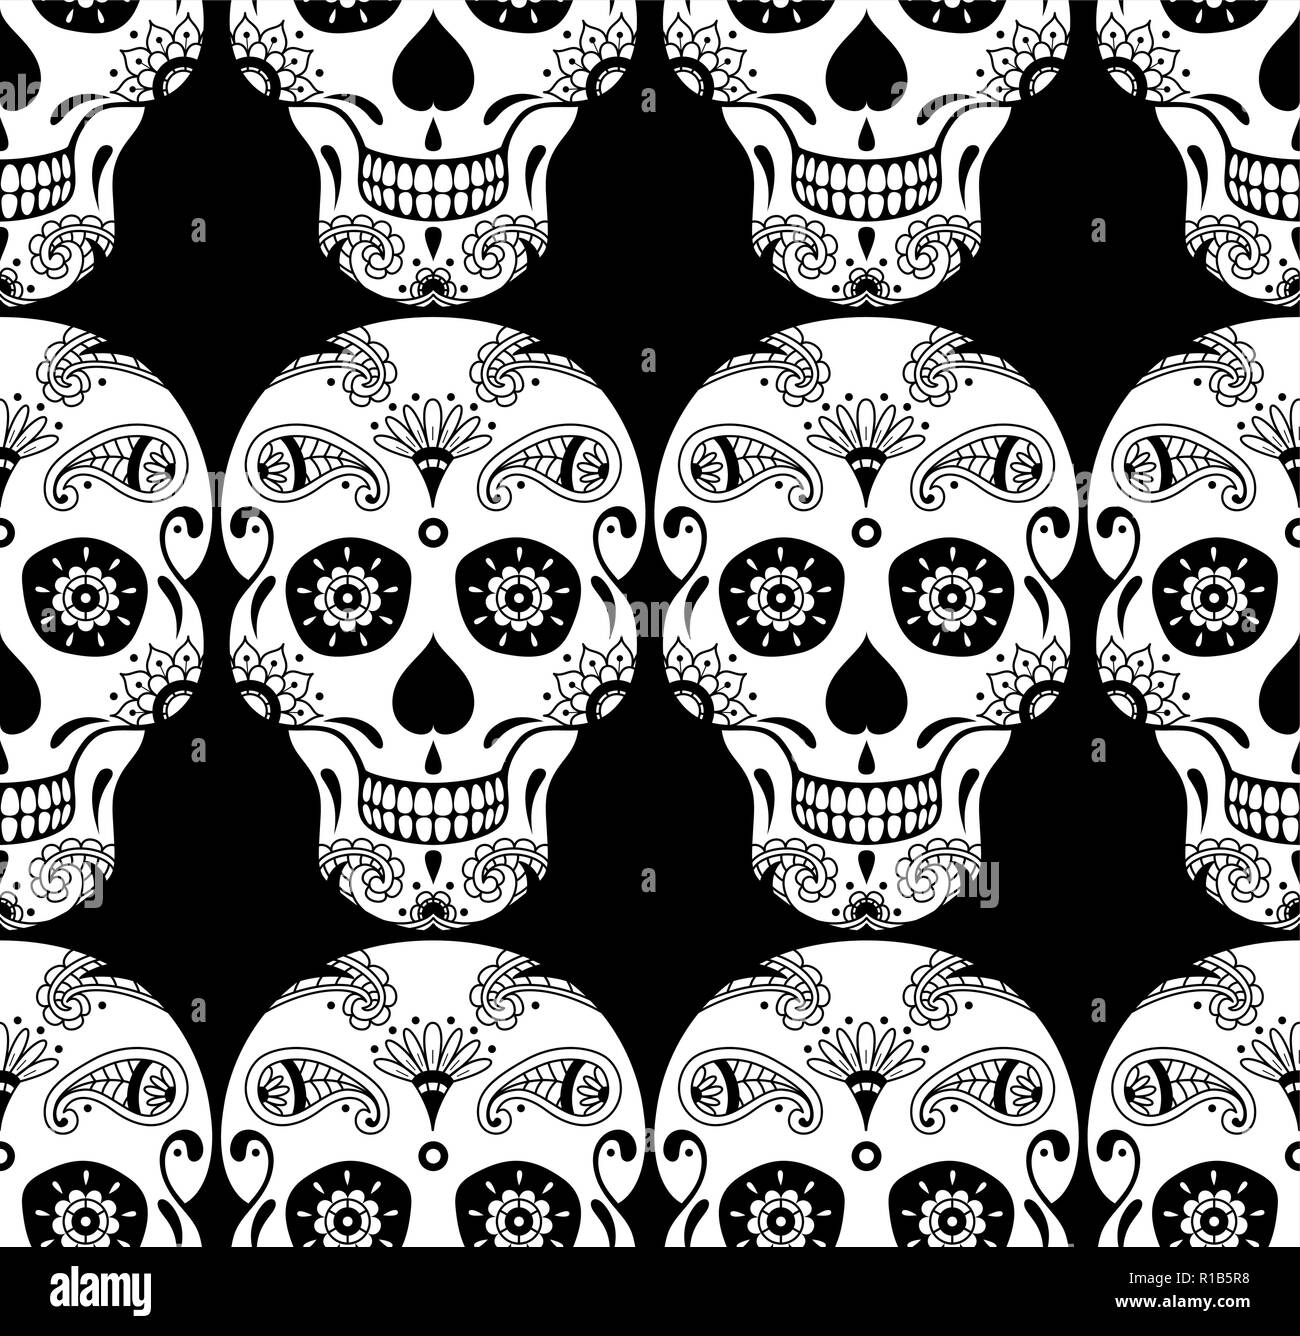 Vector pattern senza giunture di zucchero bianco il cranio con motivi floreali ornamento etnico su sfondo nero. Illustrazione messicano per il Giorno dei Morti Illustrazione Vettoriale